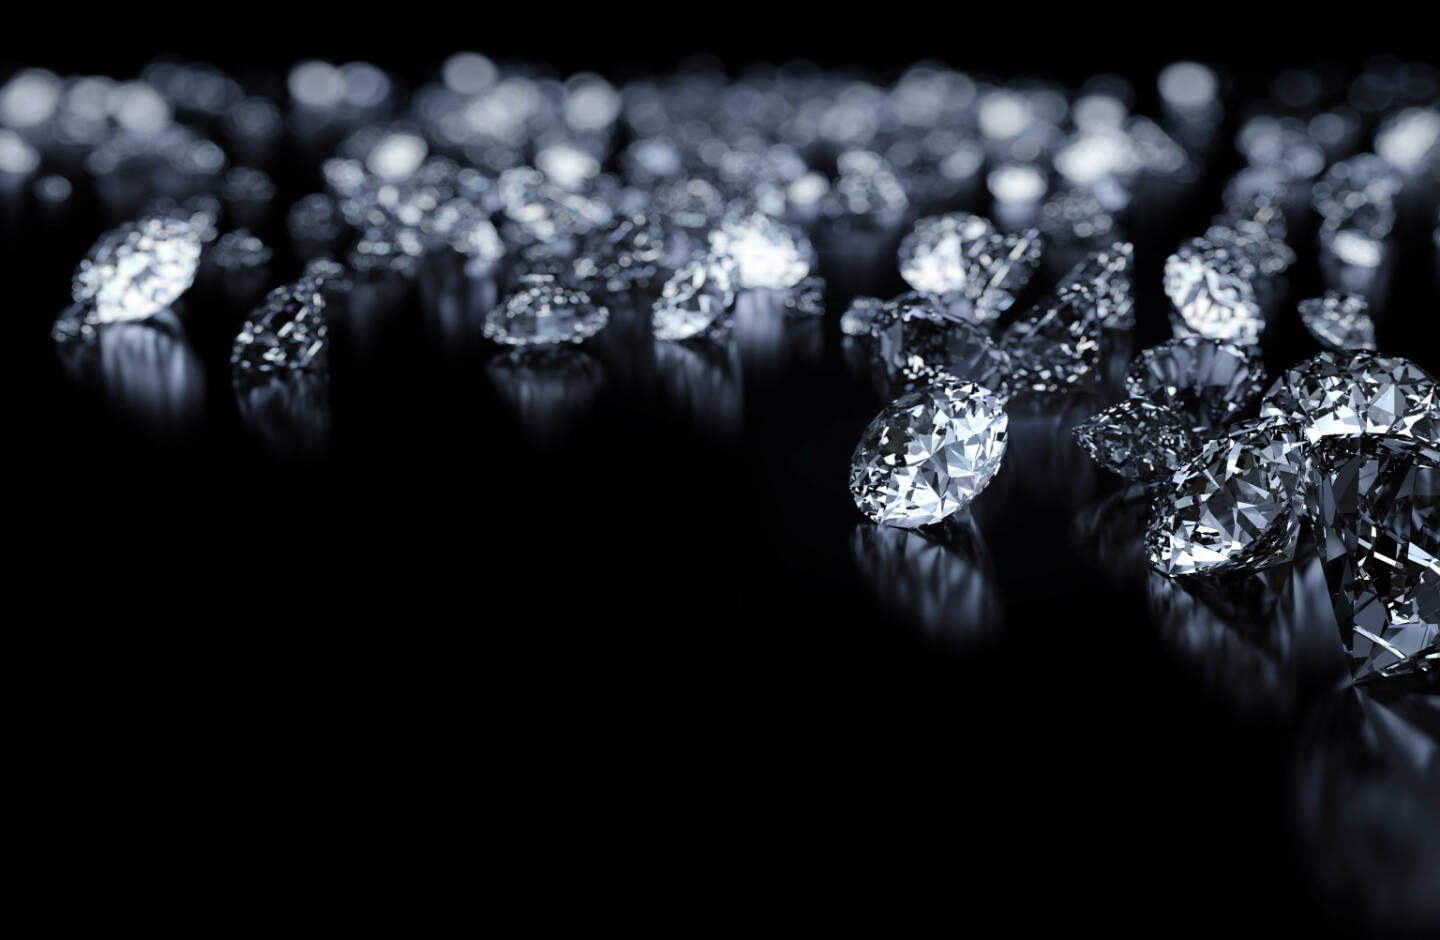 Diamant, Diamanten http://www.shutterstock.com/de/pic-114395257/stock